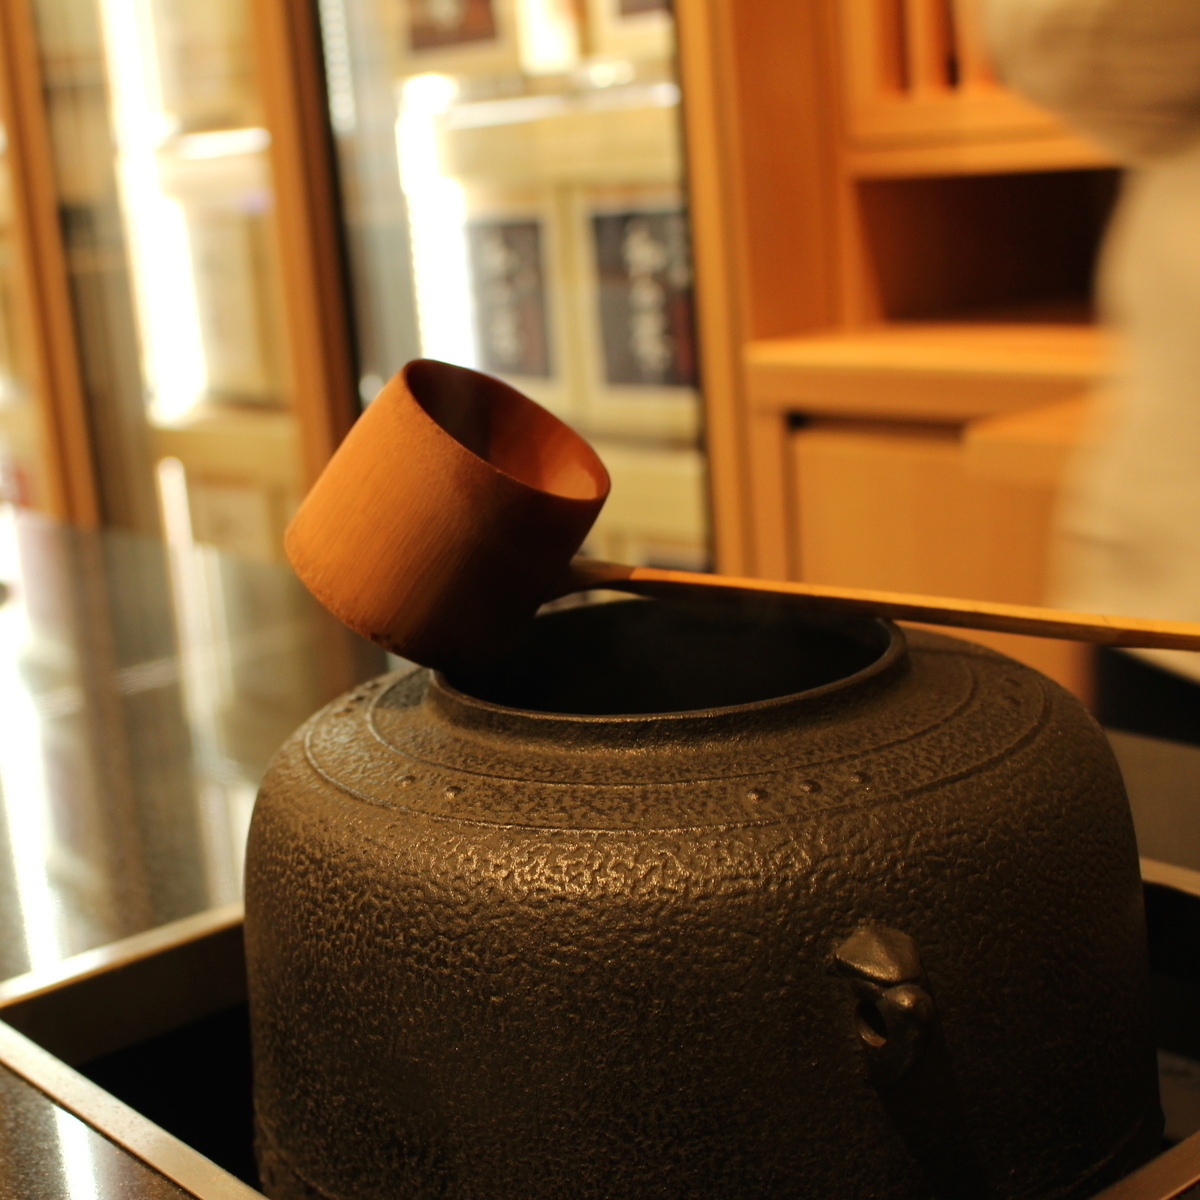 高級日本茶「黄金みどり」の取り扱いも。伊藤園「和の茶」はお茶と向き合える場所